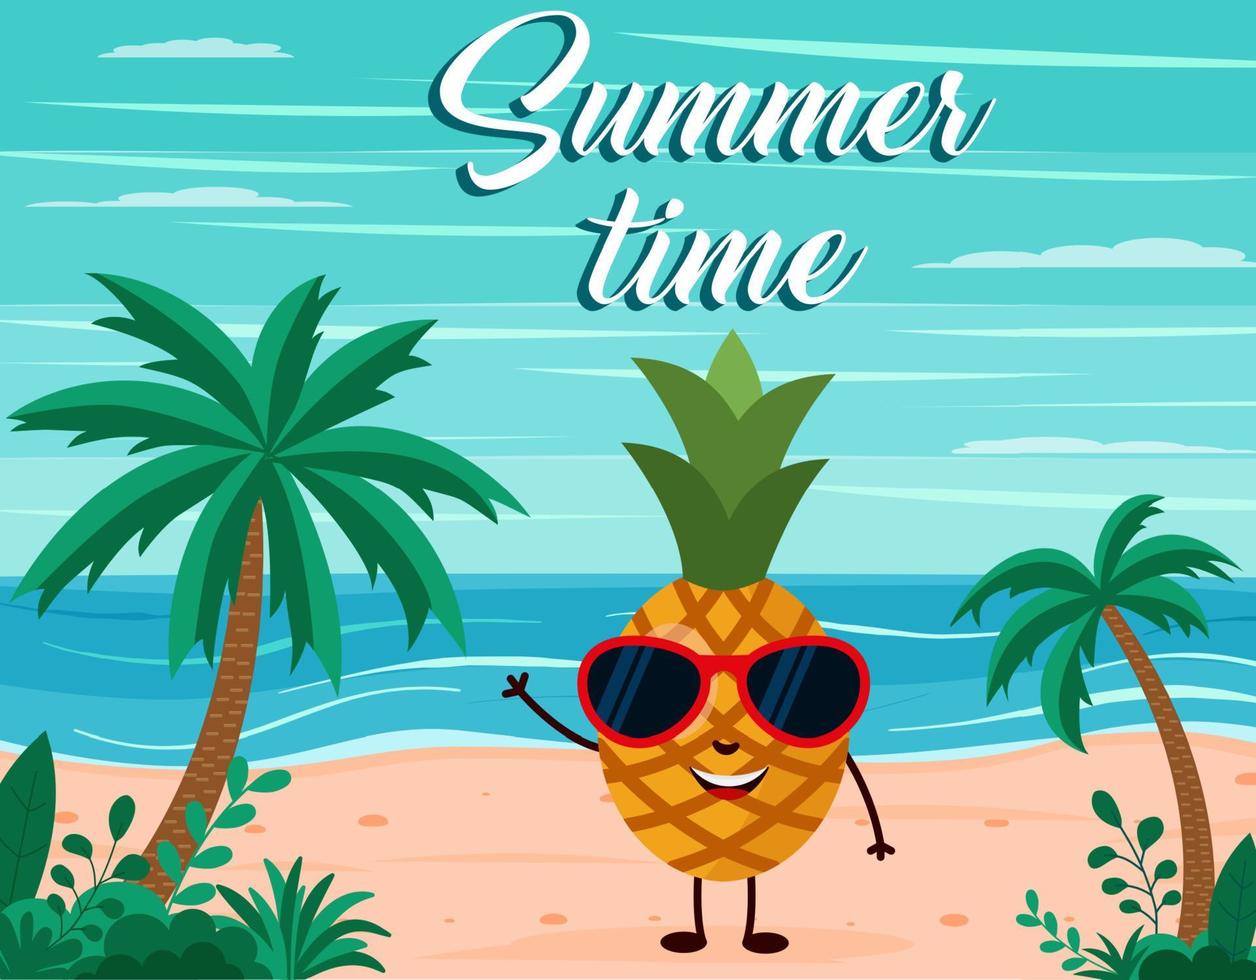 lustiger sommerstrandhintergrund mit ananasfruchtcharakter. Cartoon-Stil. Sommerzeit-Postkarte vektor